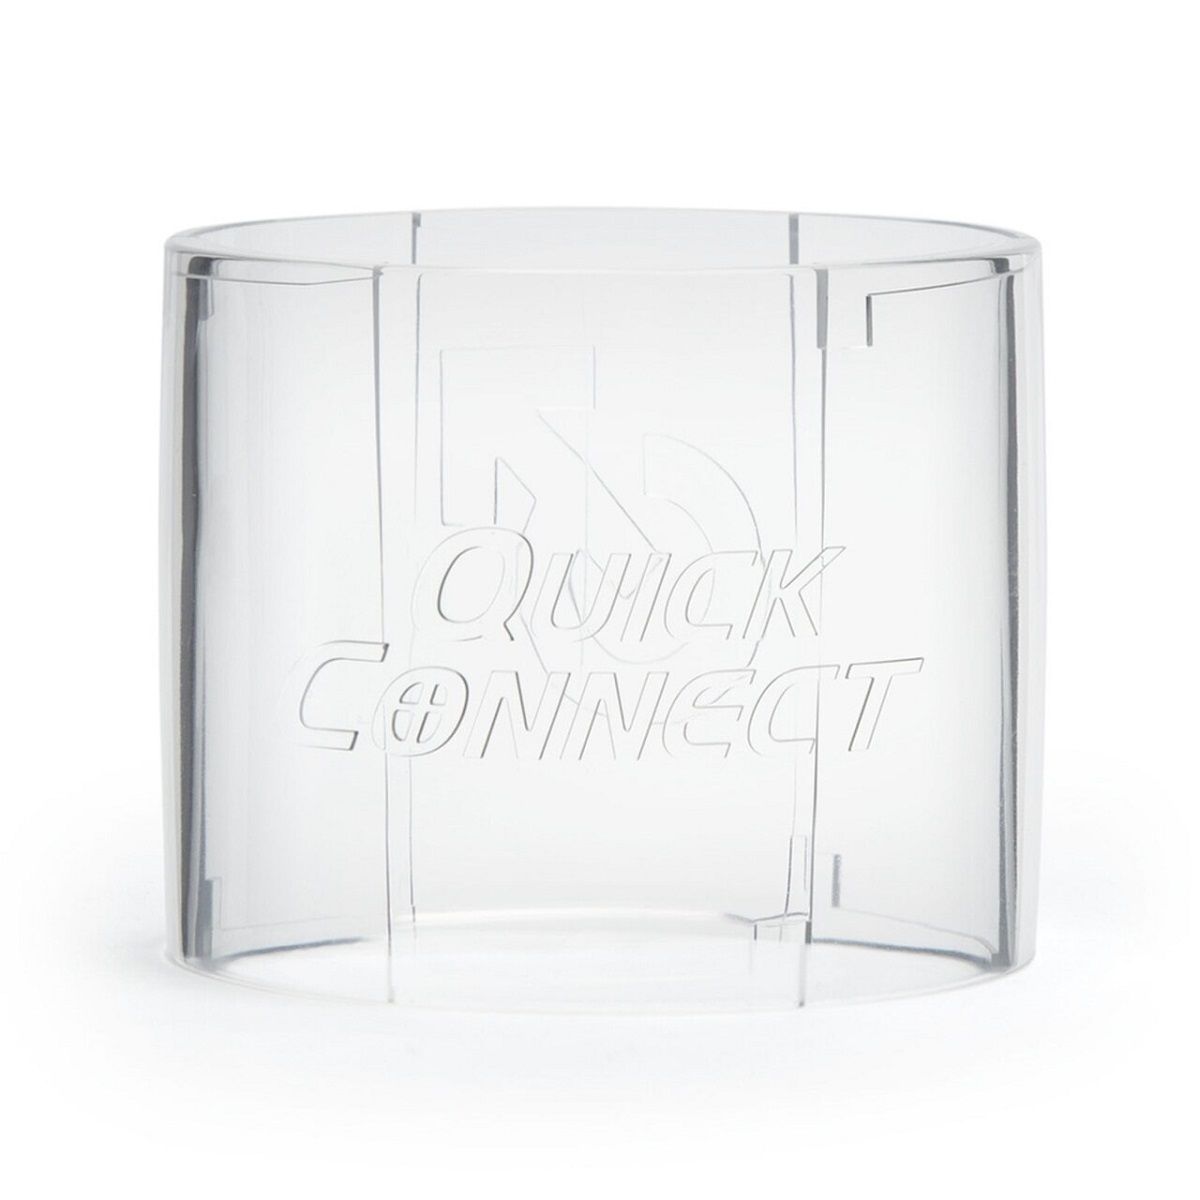     Quickshot - Quick Connect